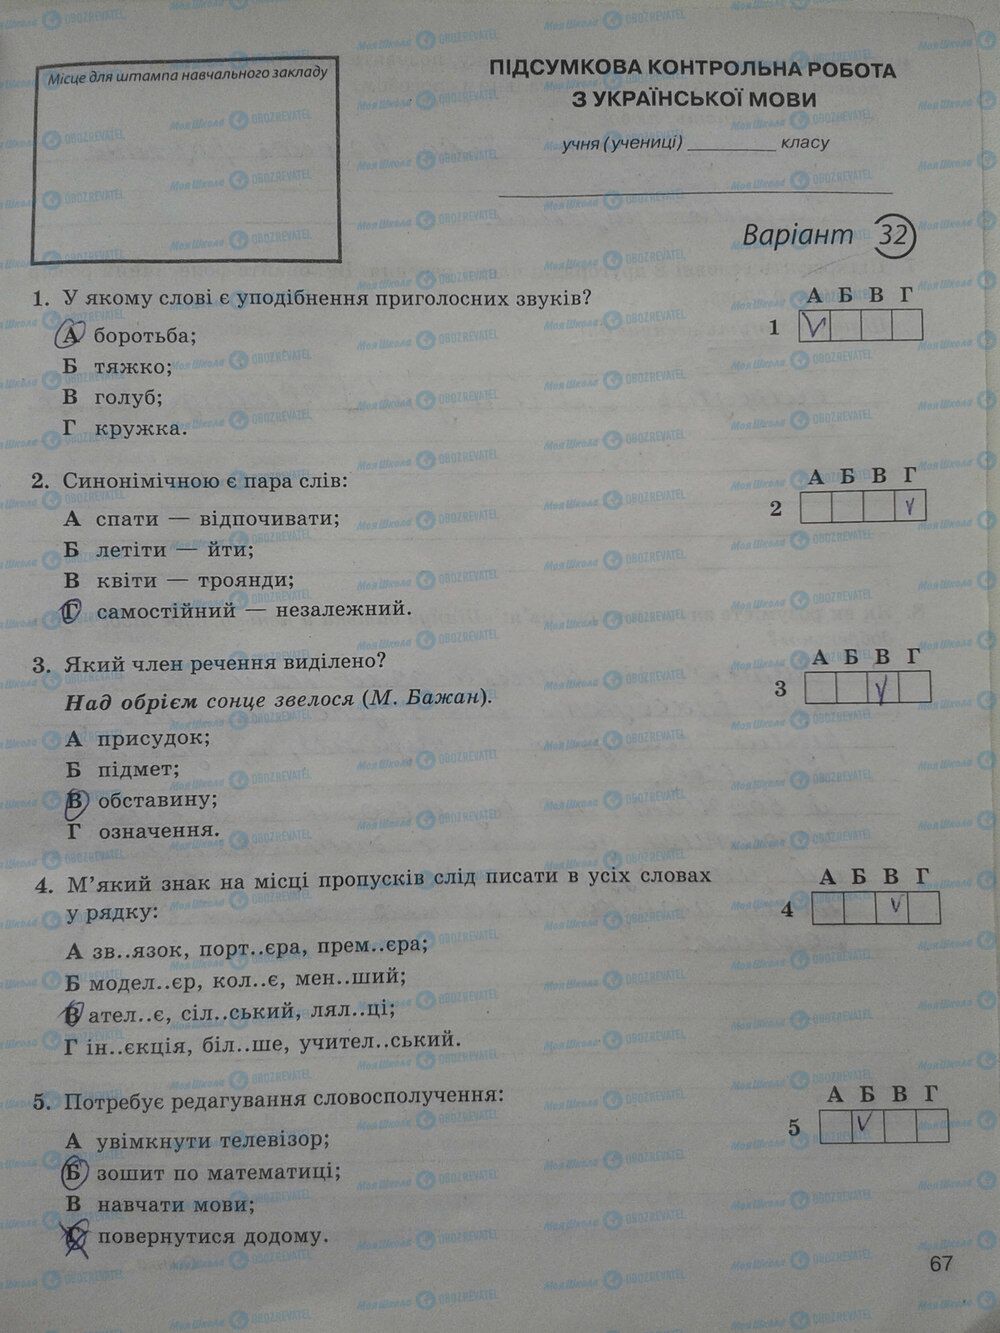 ГДЗ Укр мова 5 класс страница стр. 67